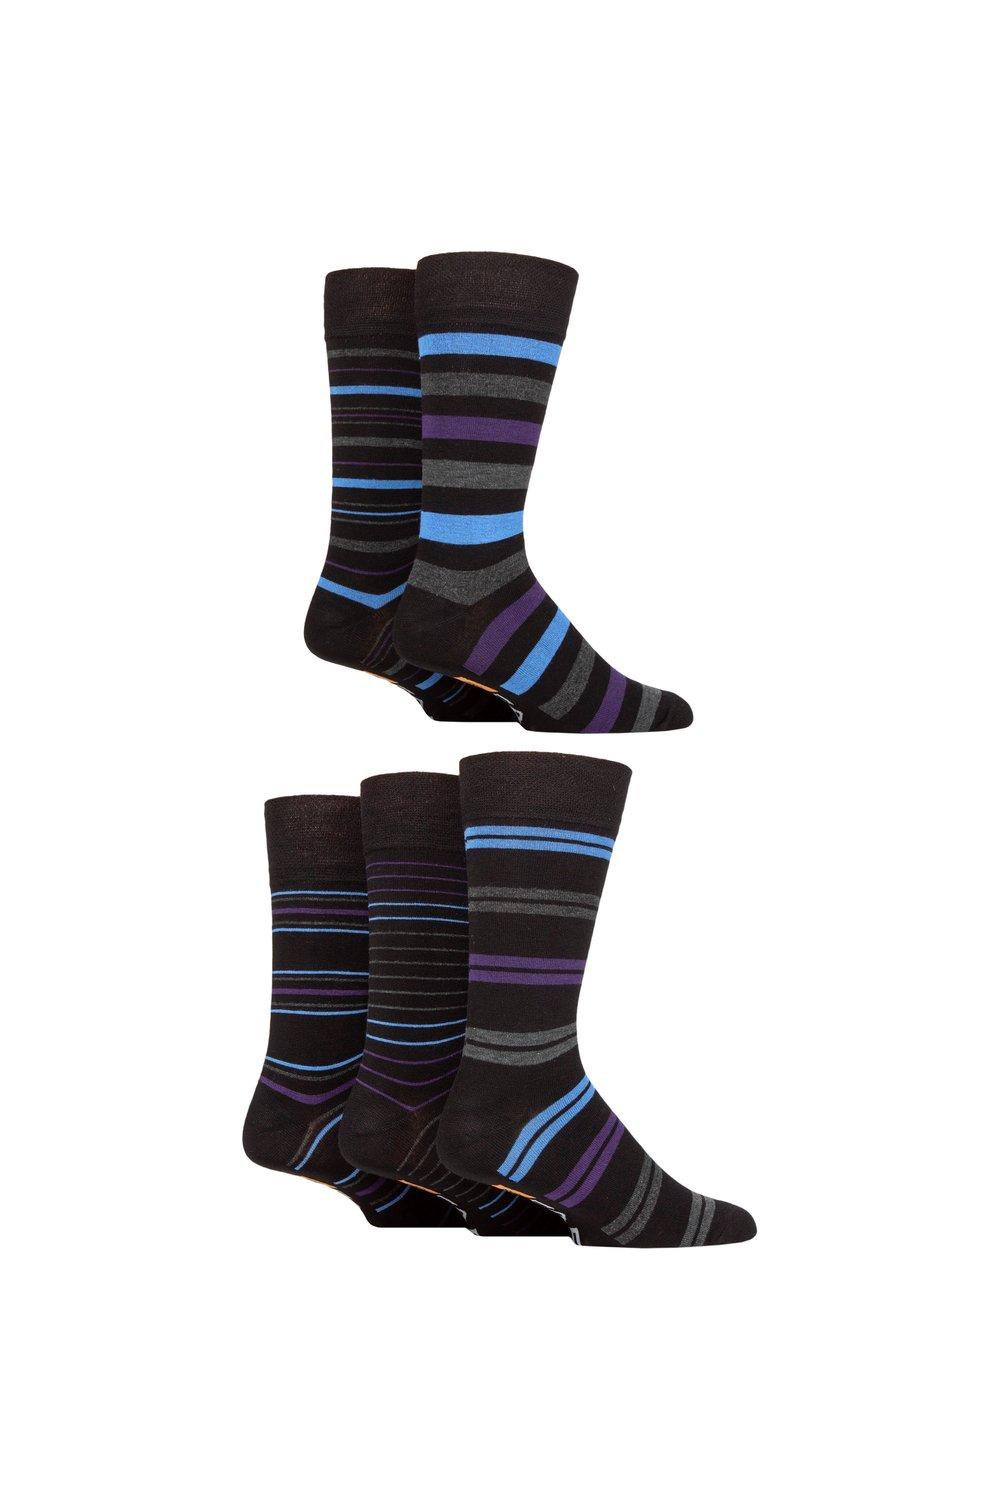 Мужские 5 пар бамбуковых носков Farah Argyle с рисунком и полосками, фиолетовый матч для мужчин красочные argyle хлопок экипажа носки бренд бизнес носки 5 пар лот